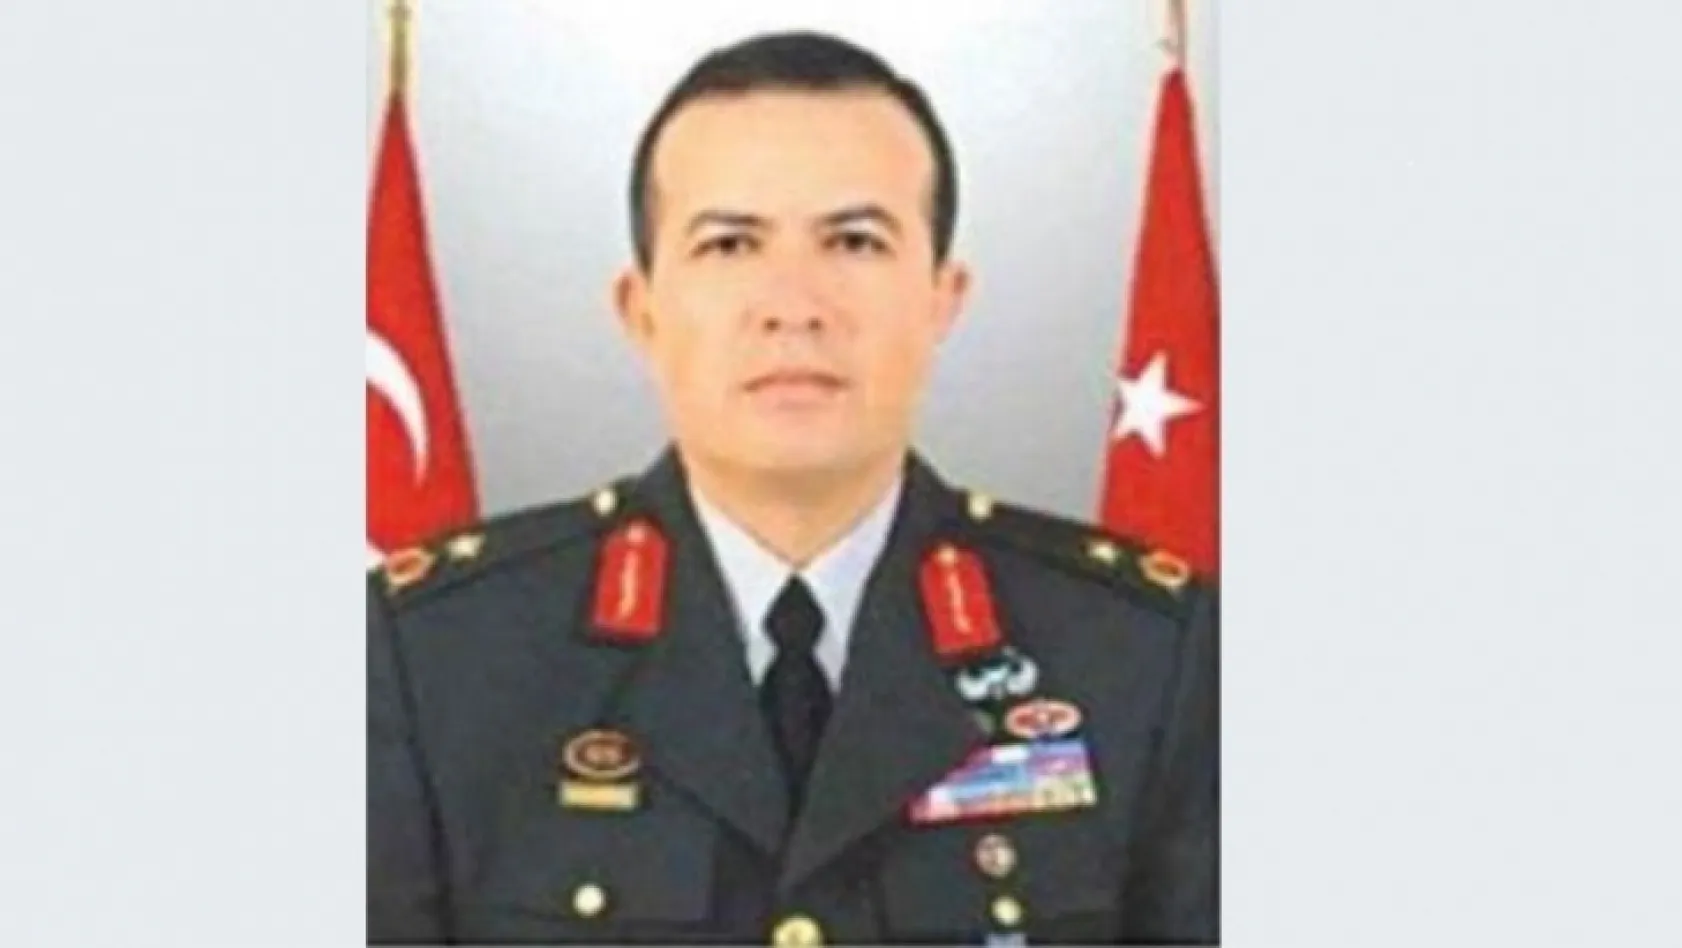 Darbe emrini Tuğgeneral Mehmet Partigöç'ten almış